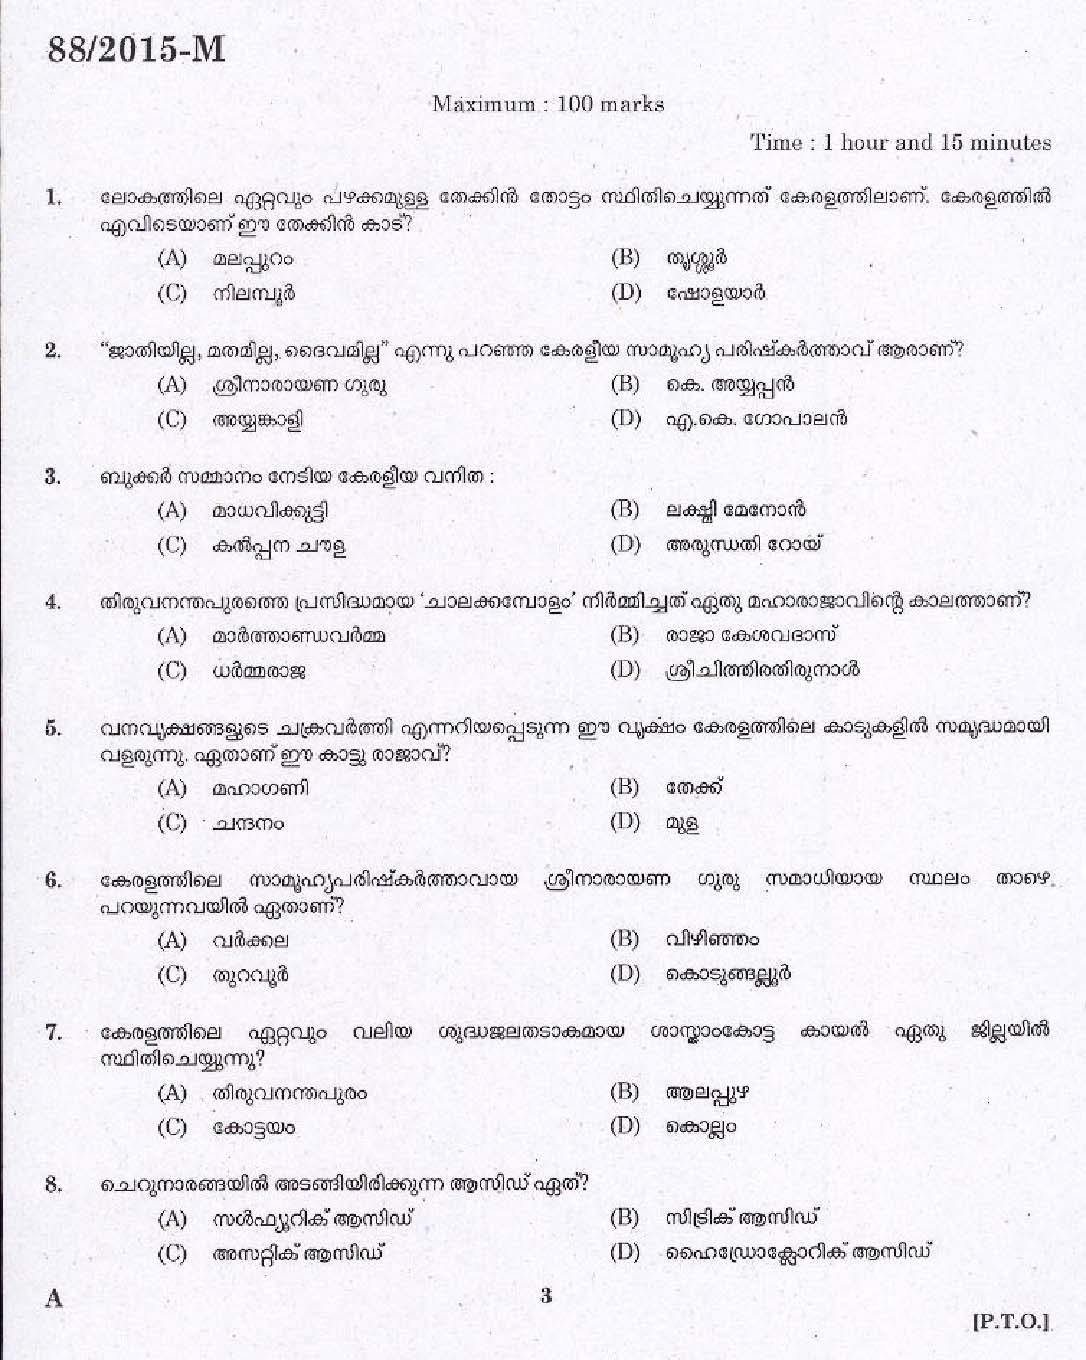 Kerala PSC Driver Grade II Exam 2015 Question Paper Code 882015 M 1